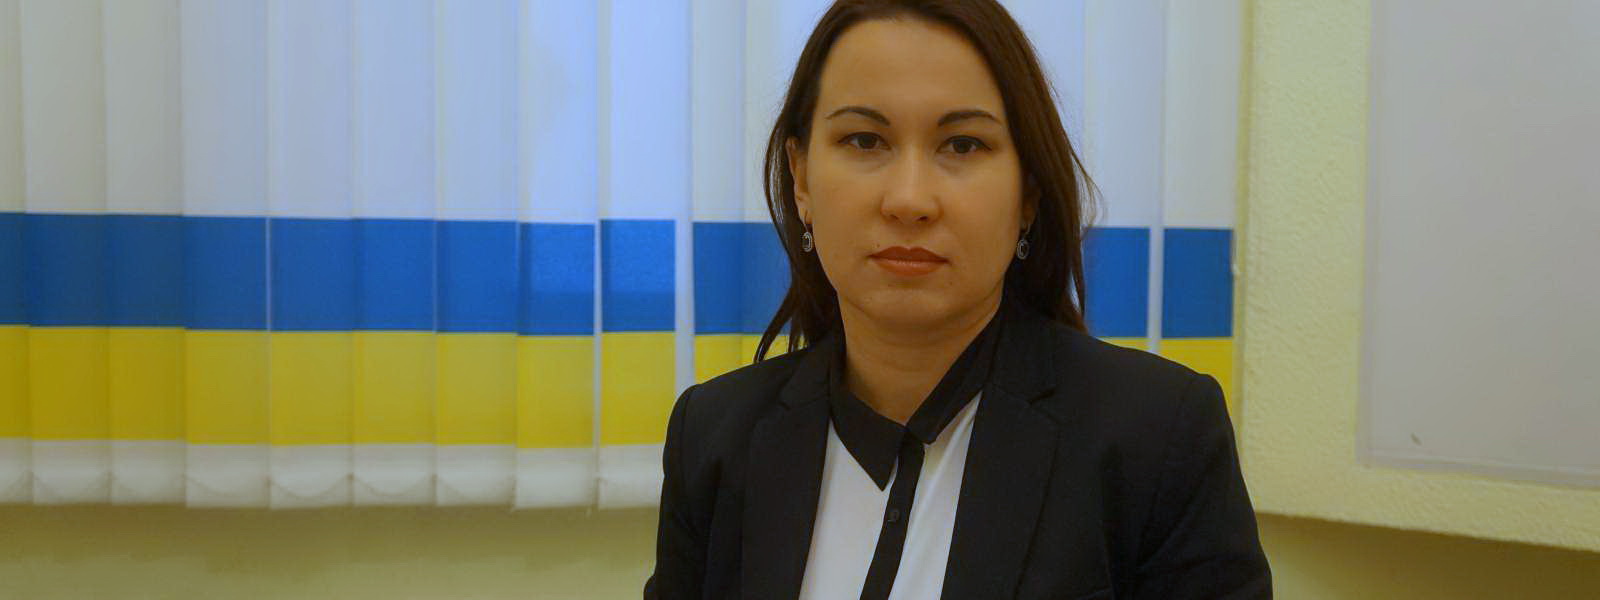 В Крыму начались облавы на граждан турецкой национальности, — Гаяна Юксель